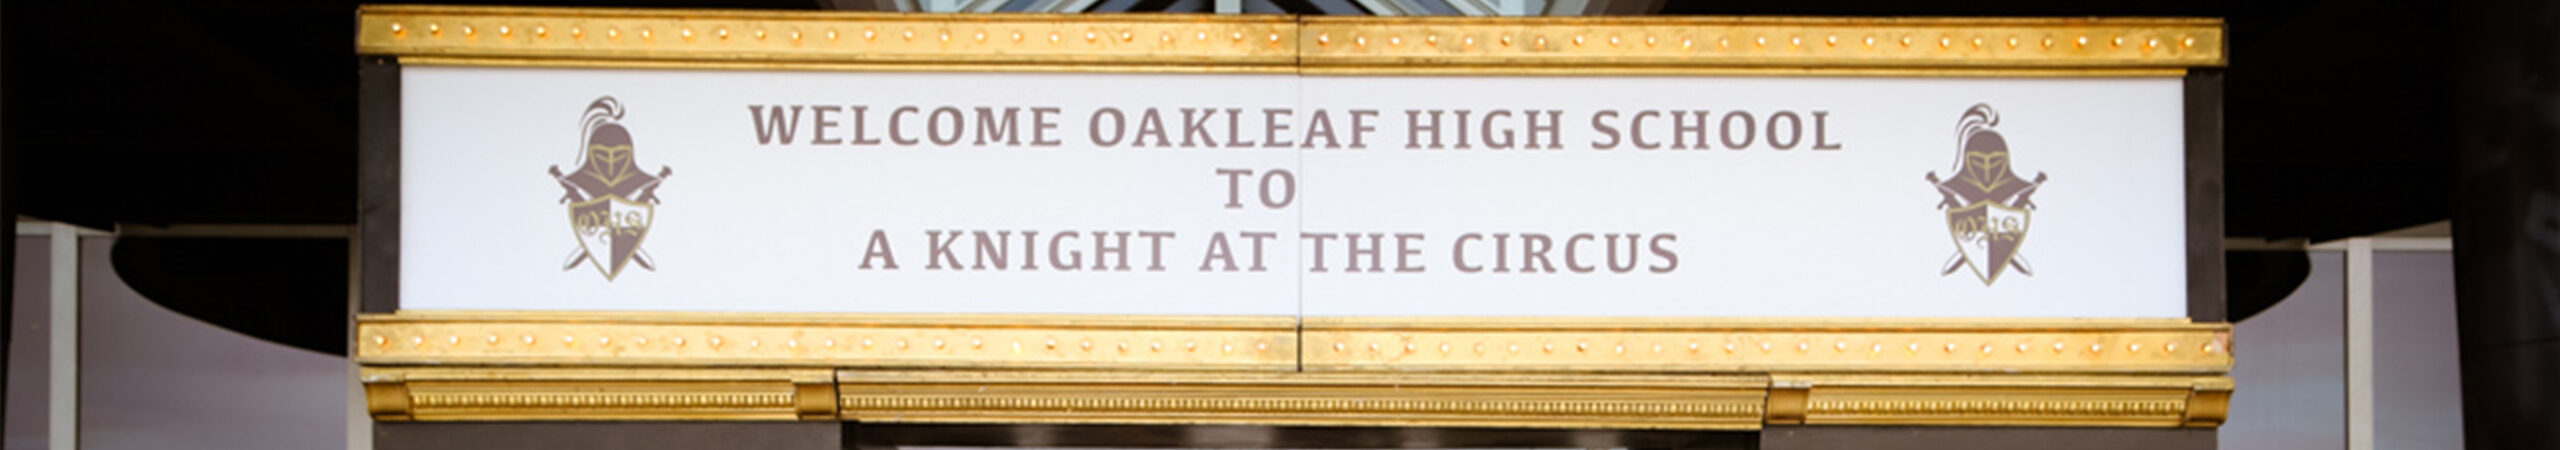 Oakleaf High School Prom 2017